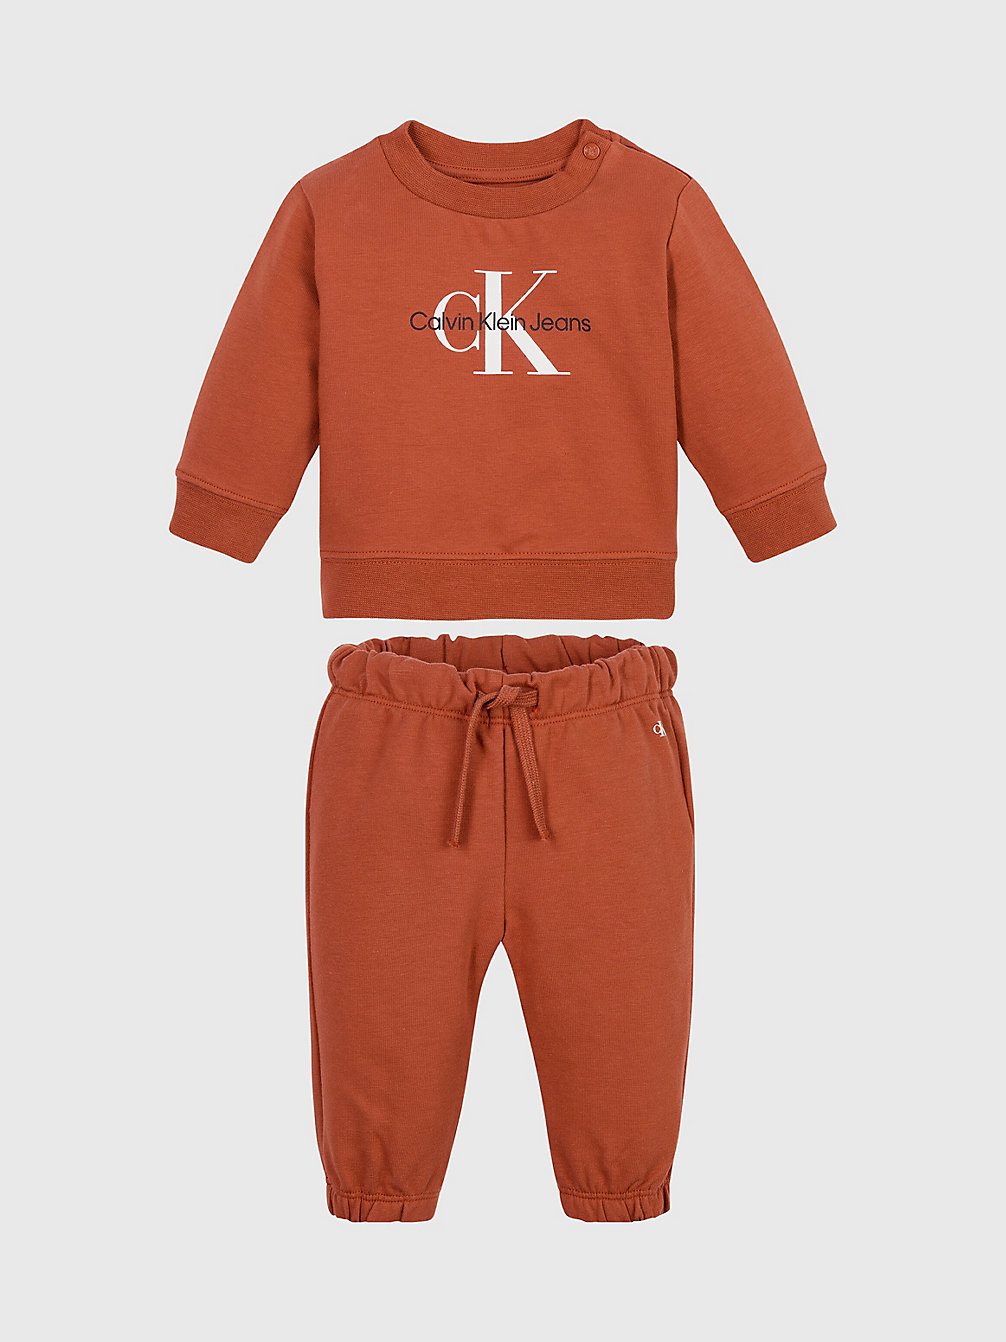 AUBURN > Logo-Trainingsanzug Für Babys > undefined newborn - Calvin Klein